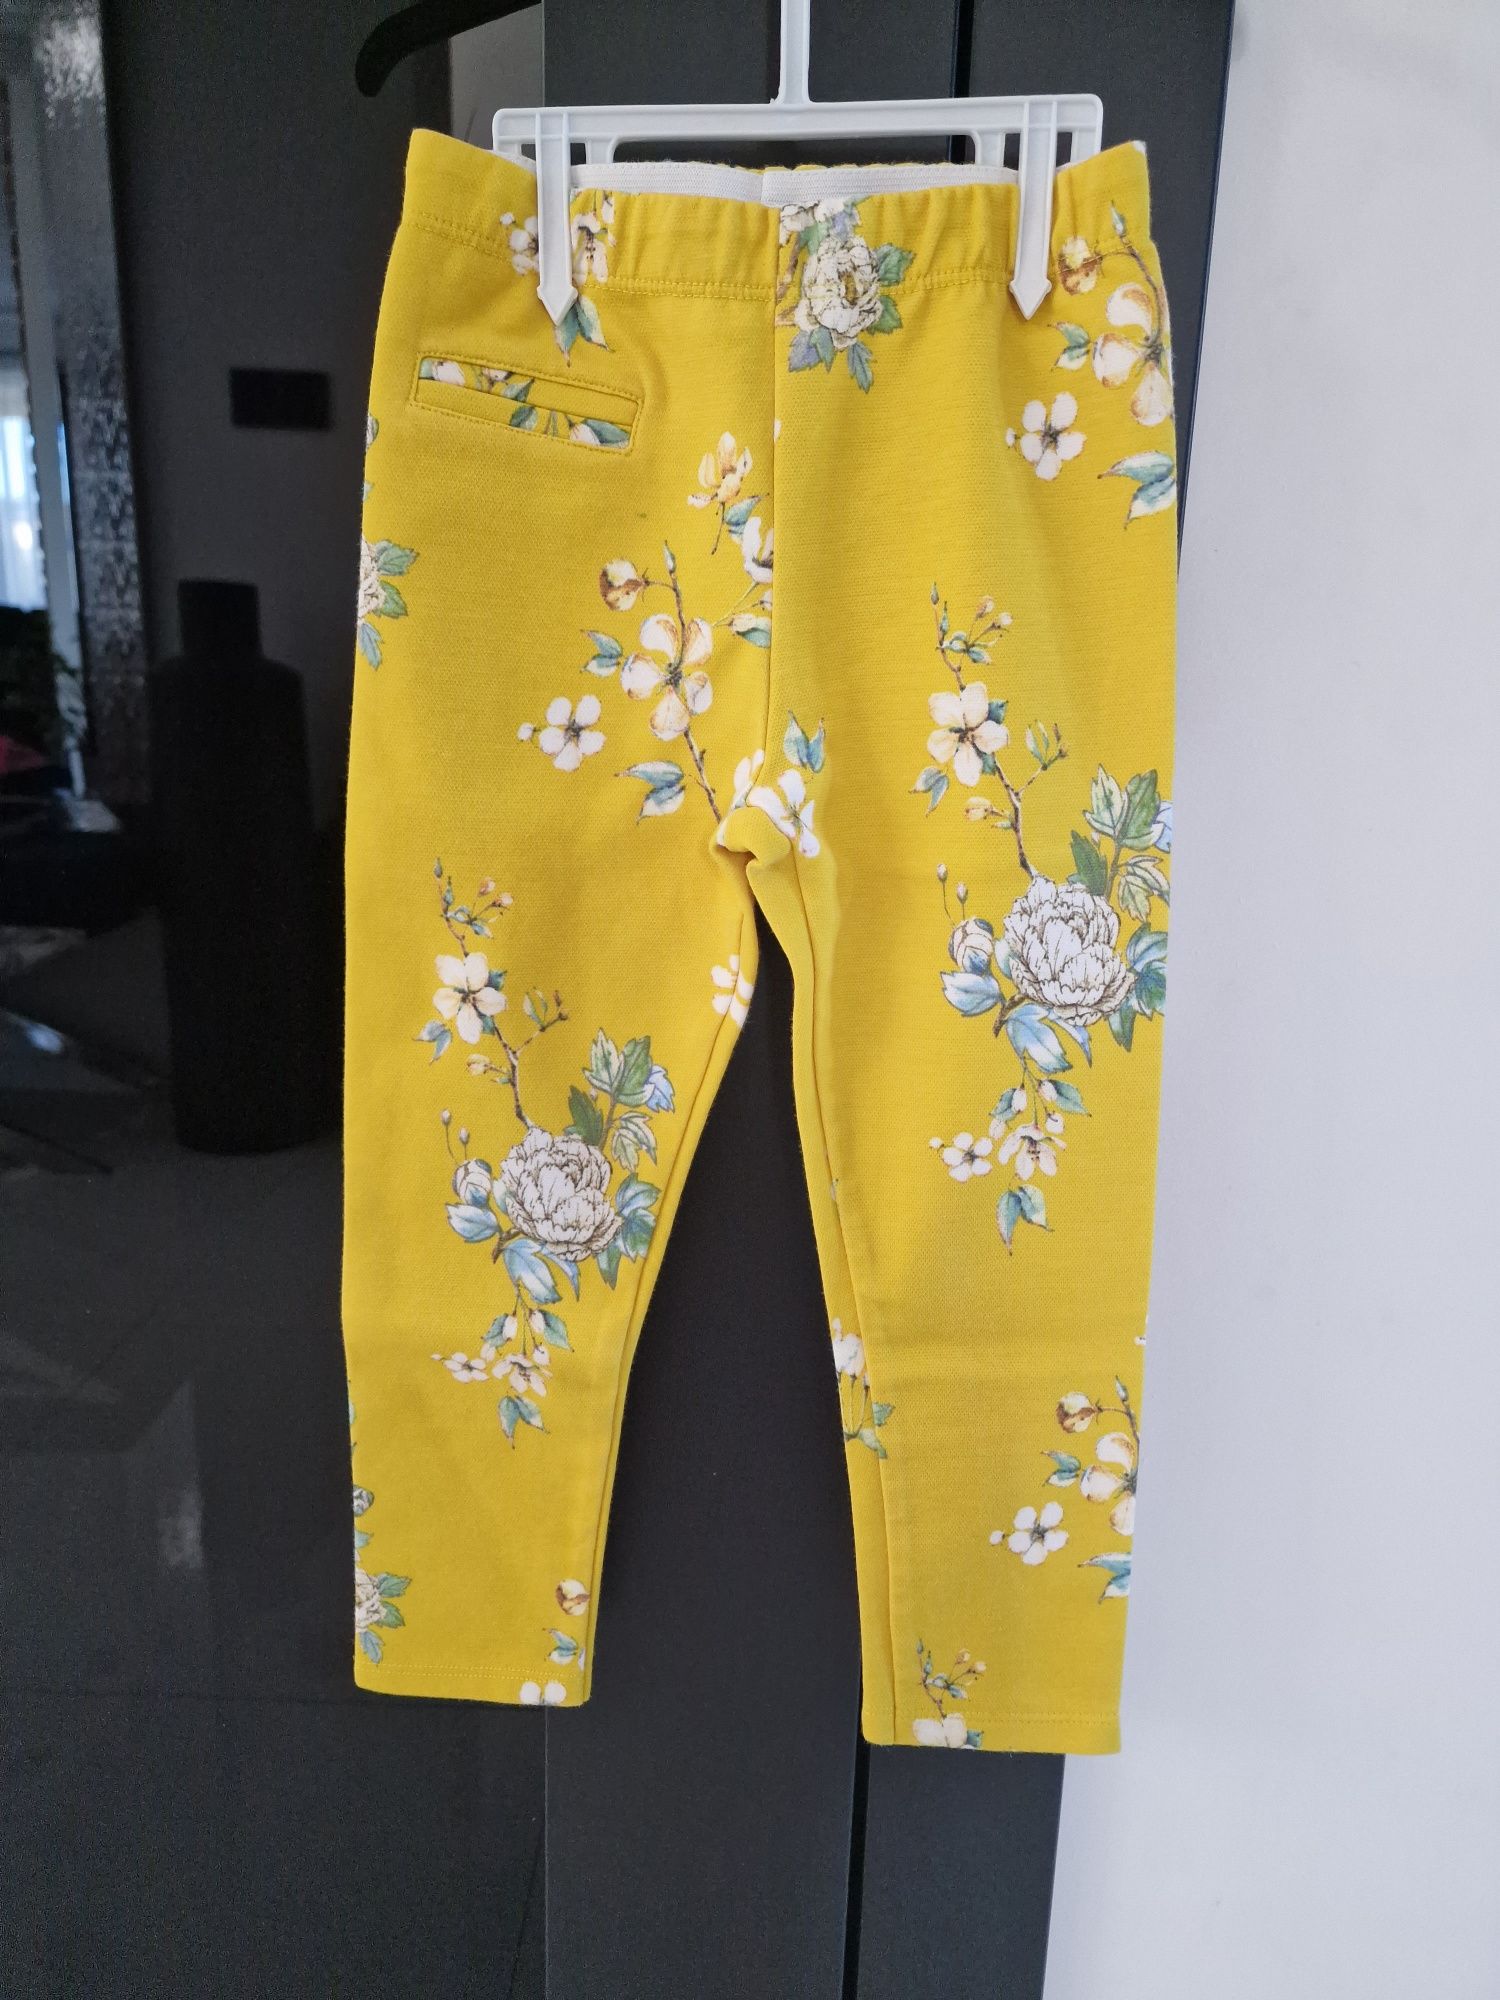 Spodnie Zara 110 cygaretki zolte kwiaty leginsy